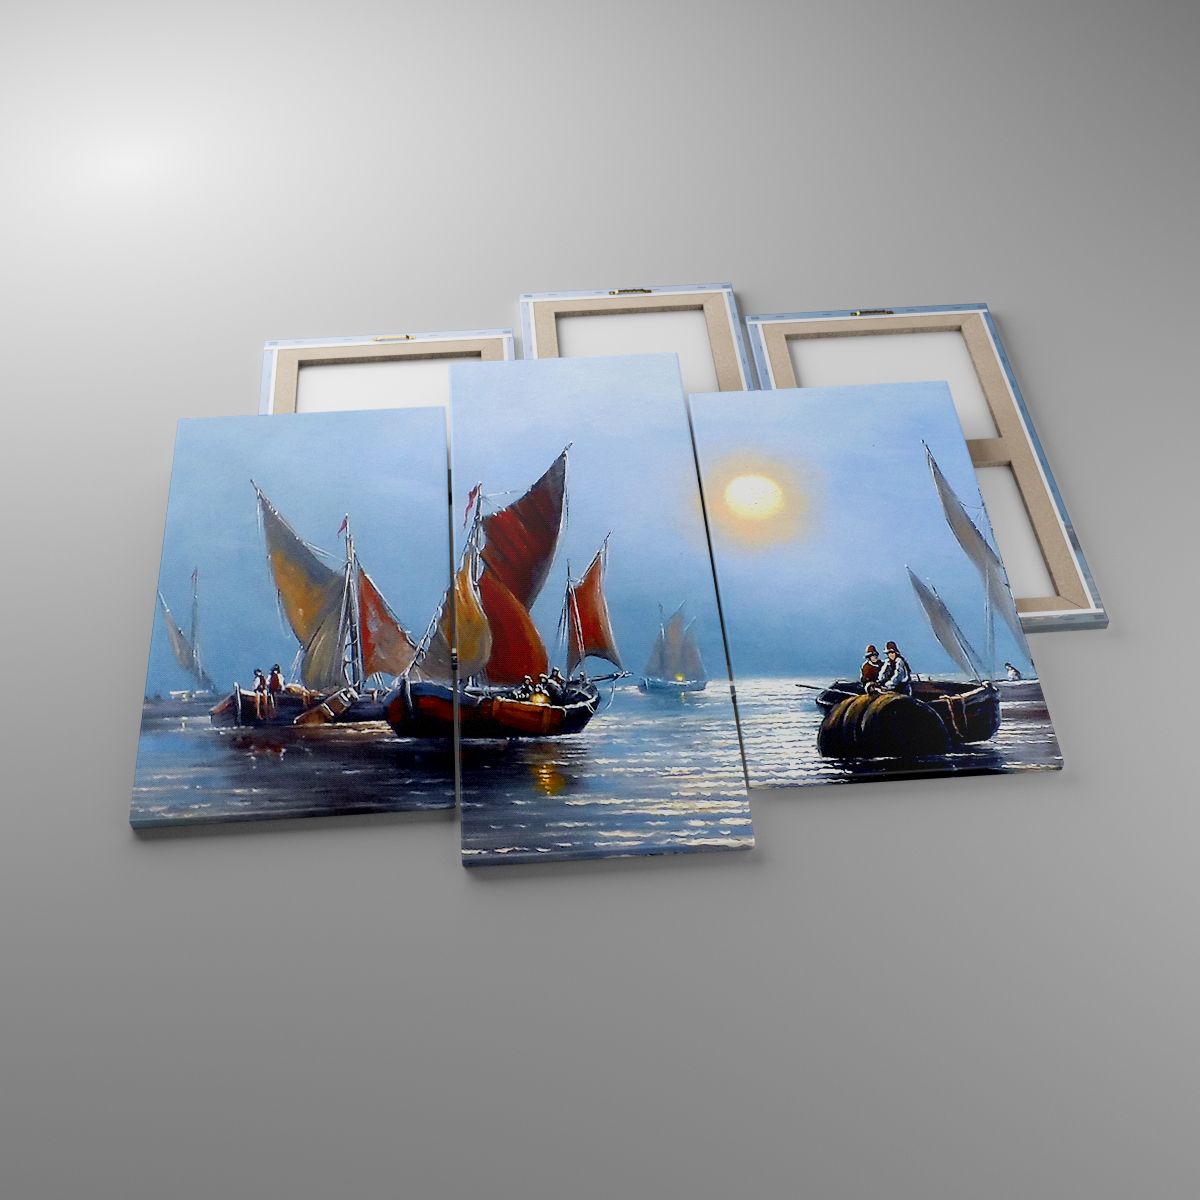 Obrazy Wschód Słońca, Obrazy Łódź Rybacka, Obrazy Połów Ryb, Obrazy Ocean, Obrazy Morze